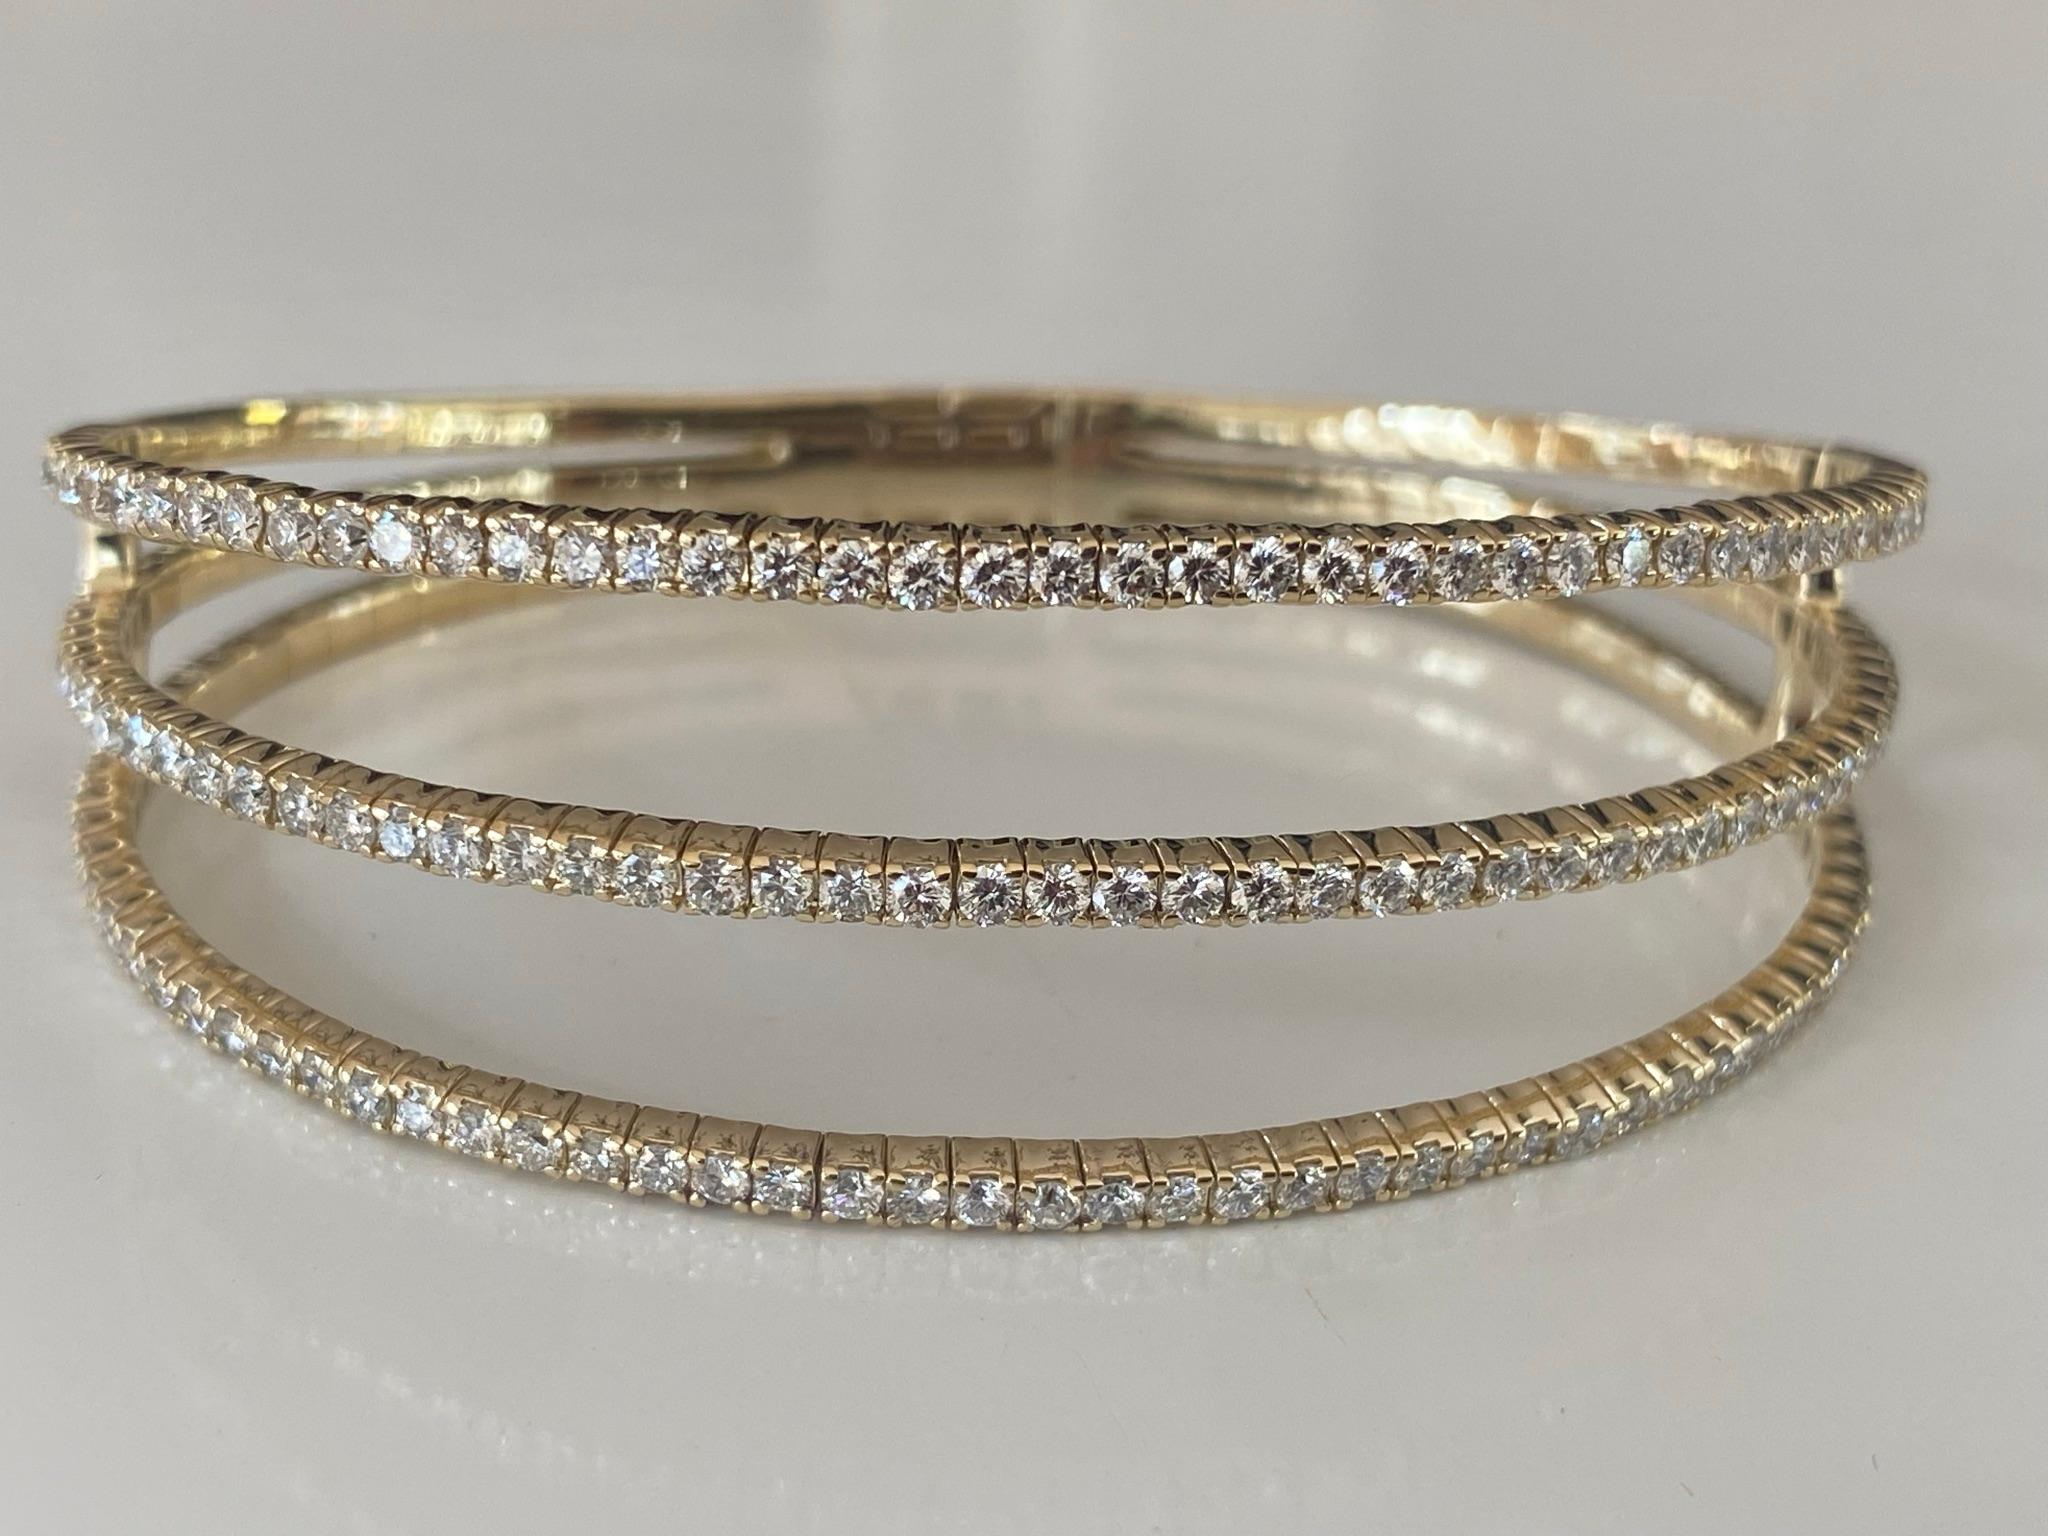 Fabriqué en or jaune 14 carats, ce bracelet souple présente 141 diamants ronds de couleur G et de pureté VS-SI qui scintillent sur trois rangs. Les diamants totalisent 3,47 carats et le bracelet mesure 7 pouces. 
